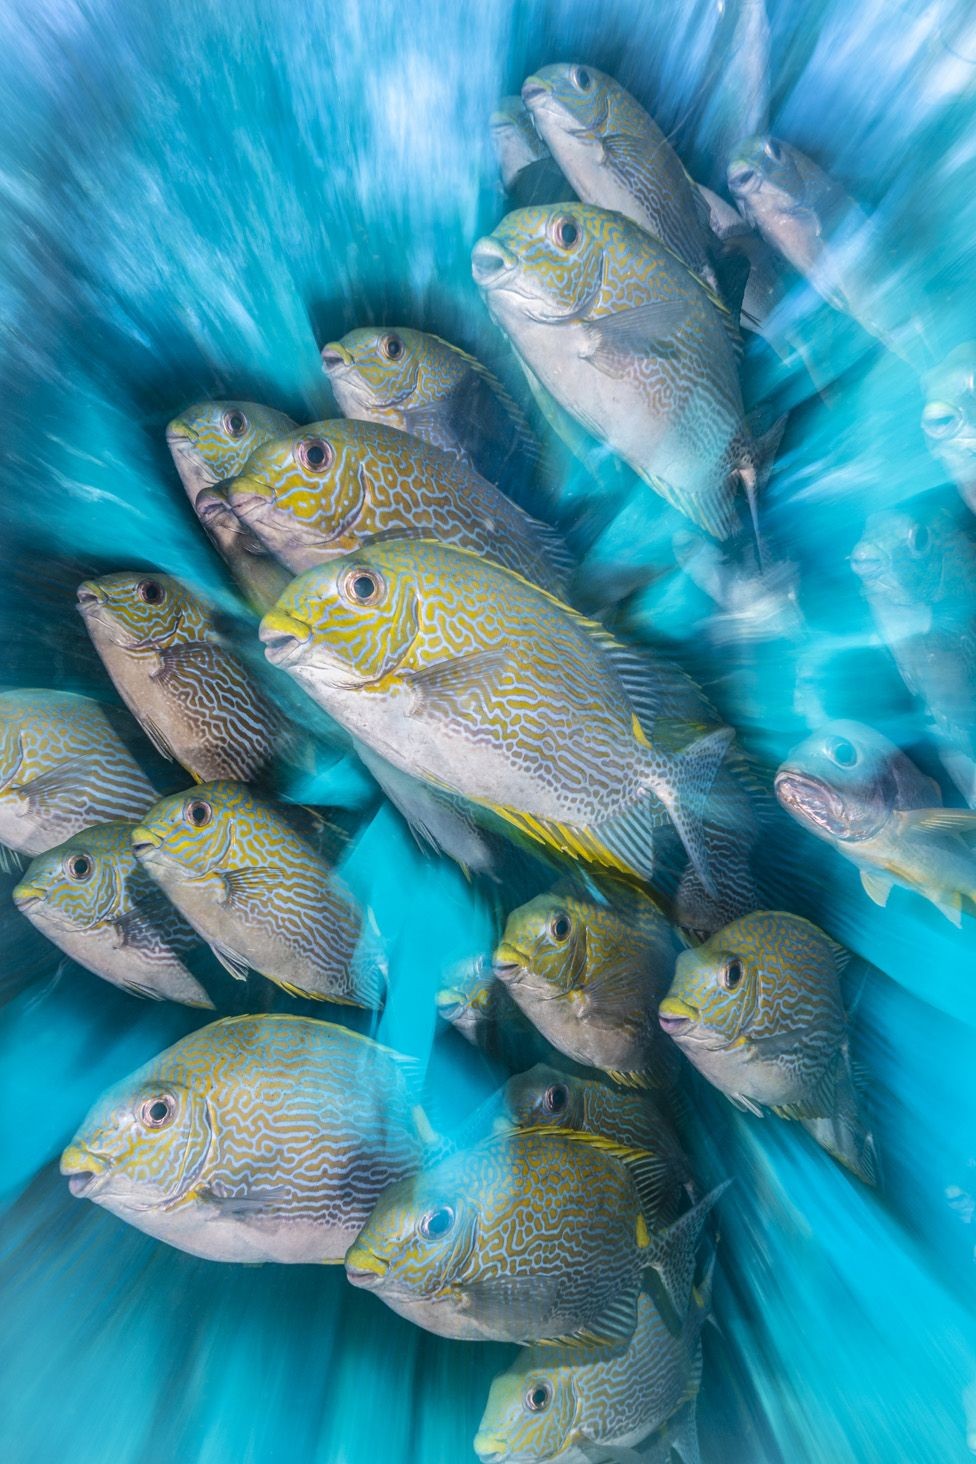 BBC - O inglês Nick More ganhou a categoria para a fotógrafos britânicos com uma imagem de peixes Siganus, feita na Indonésia (Foto: Nick More via BBC)